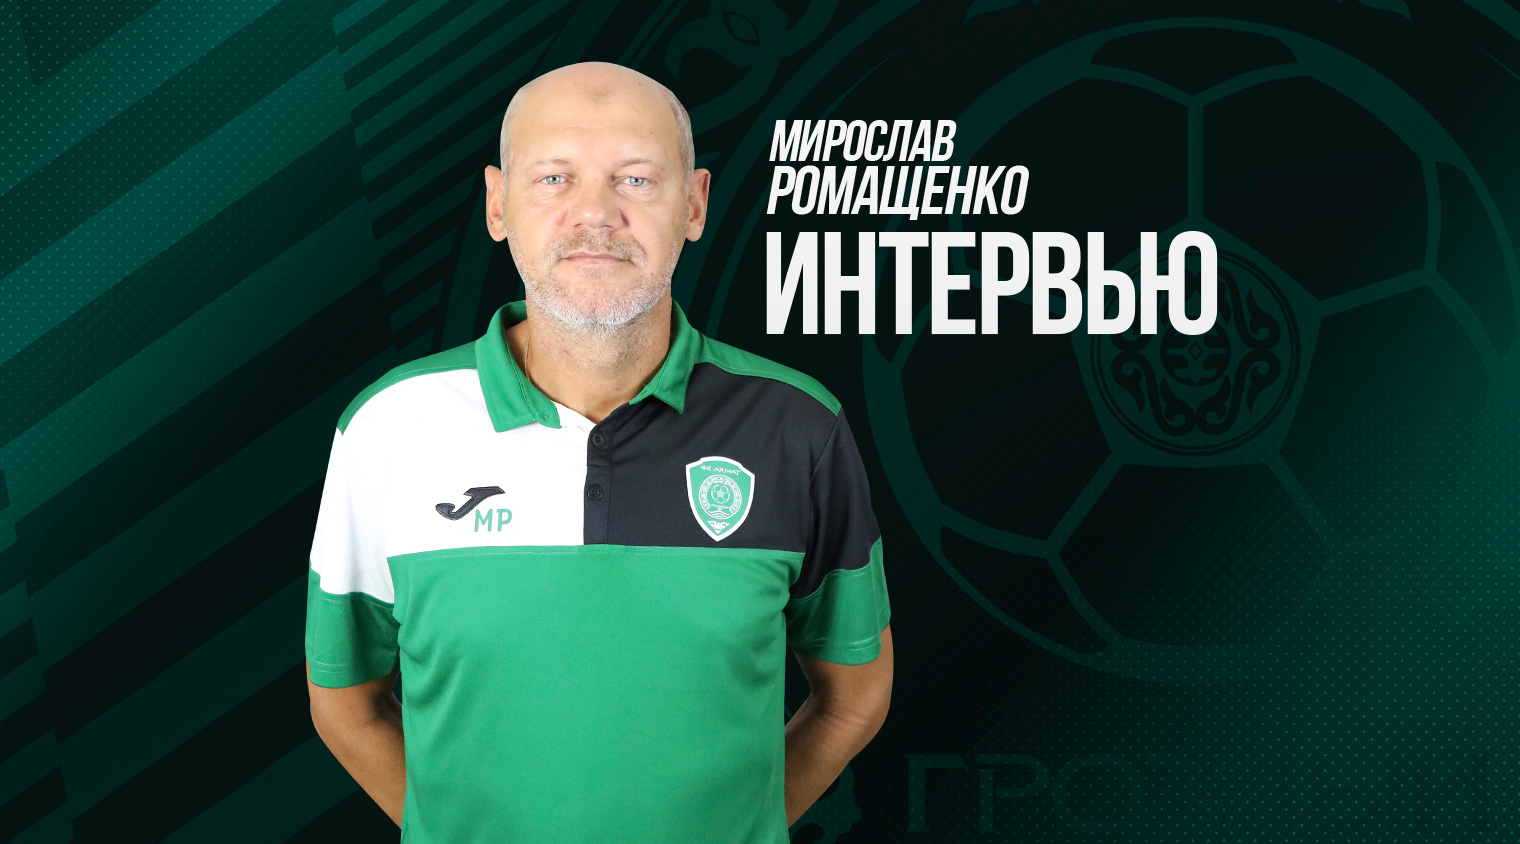 Мирослав Ромащенко: «Рад вернуться в Грозный. «Ахмат» для меня не чужая команда»